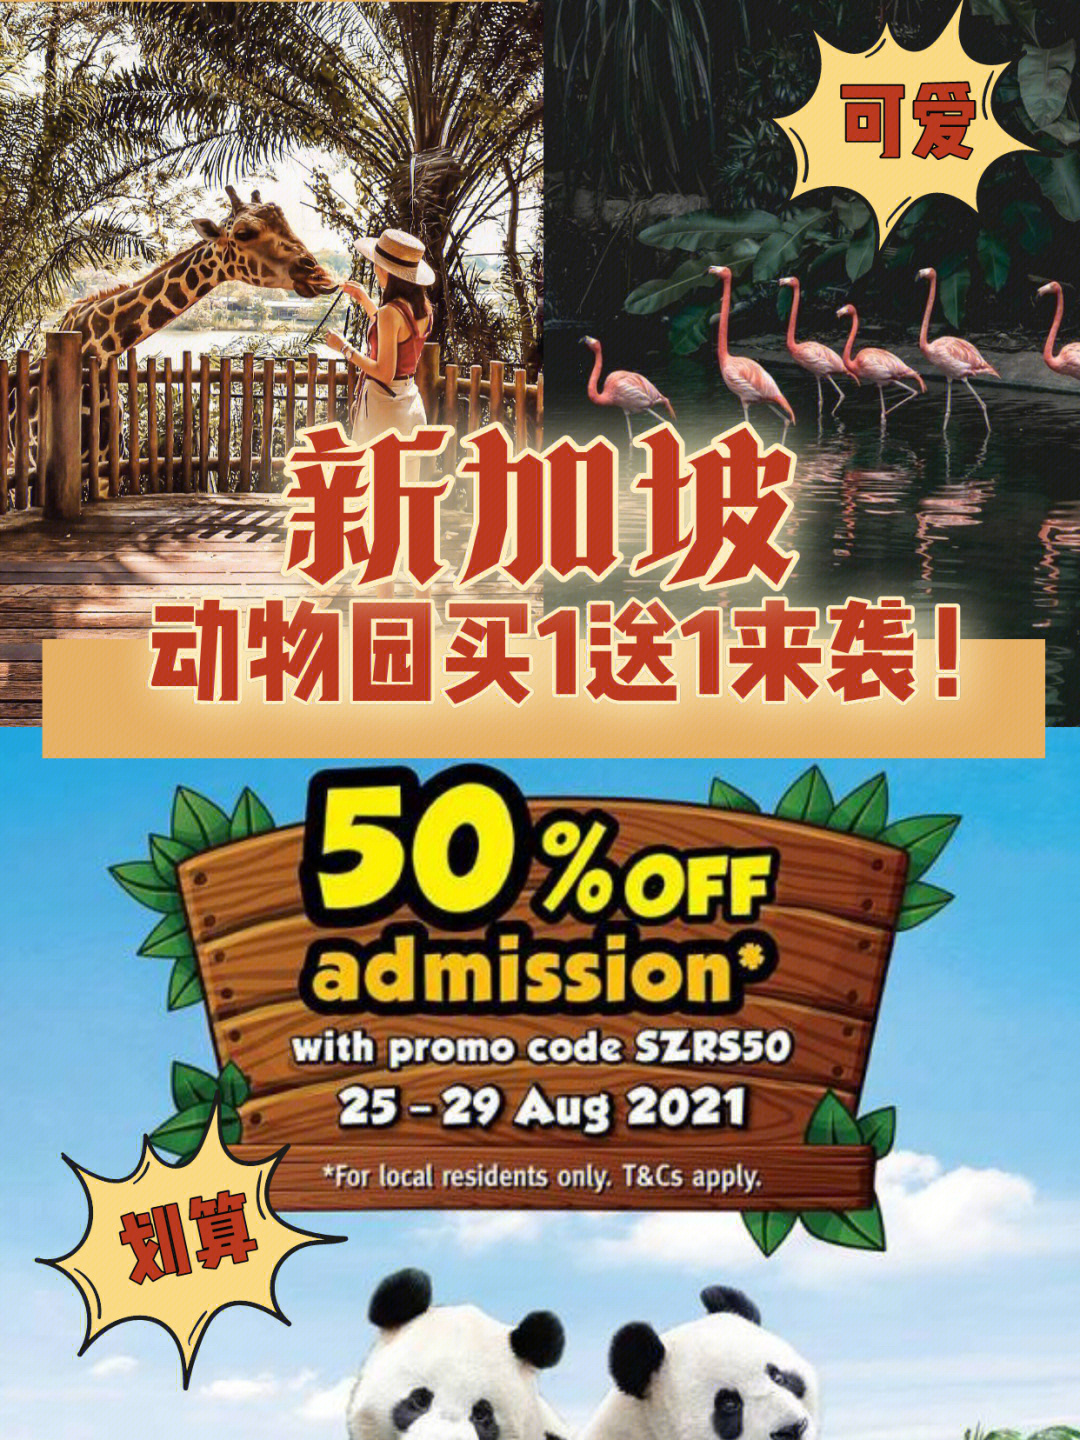 56615折门票91新加坡动物园和河川生态园都适用,可能还会看到